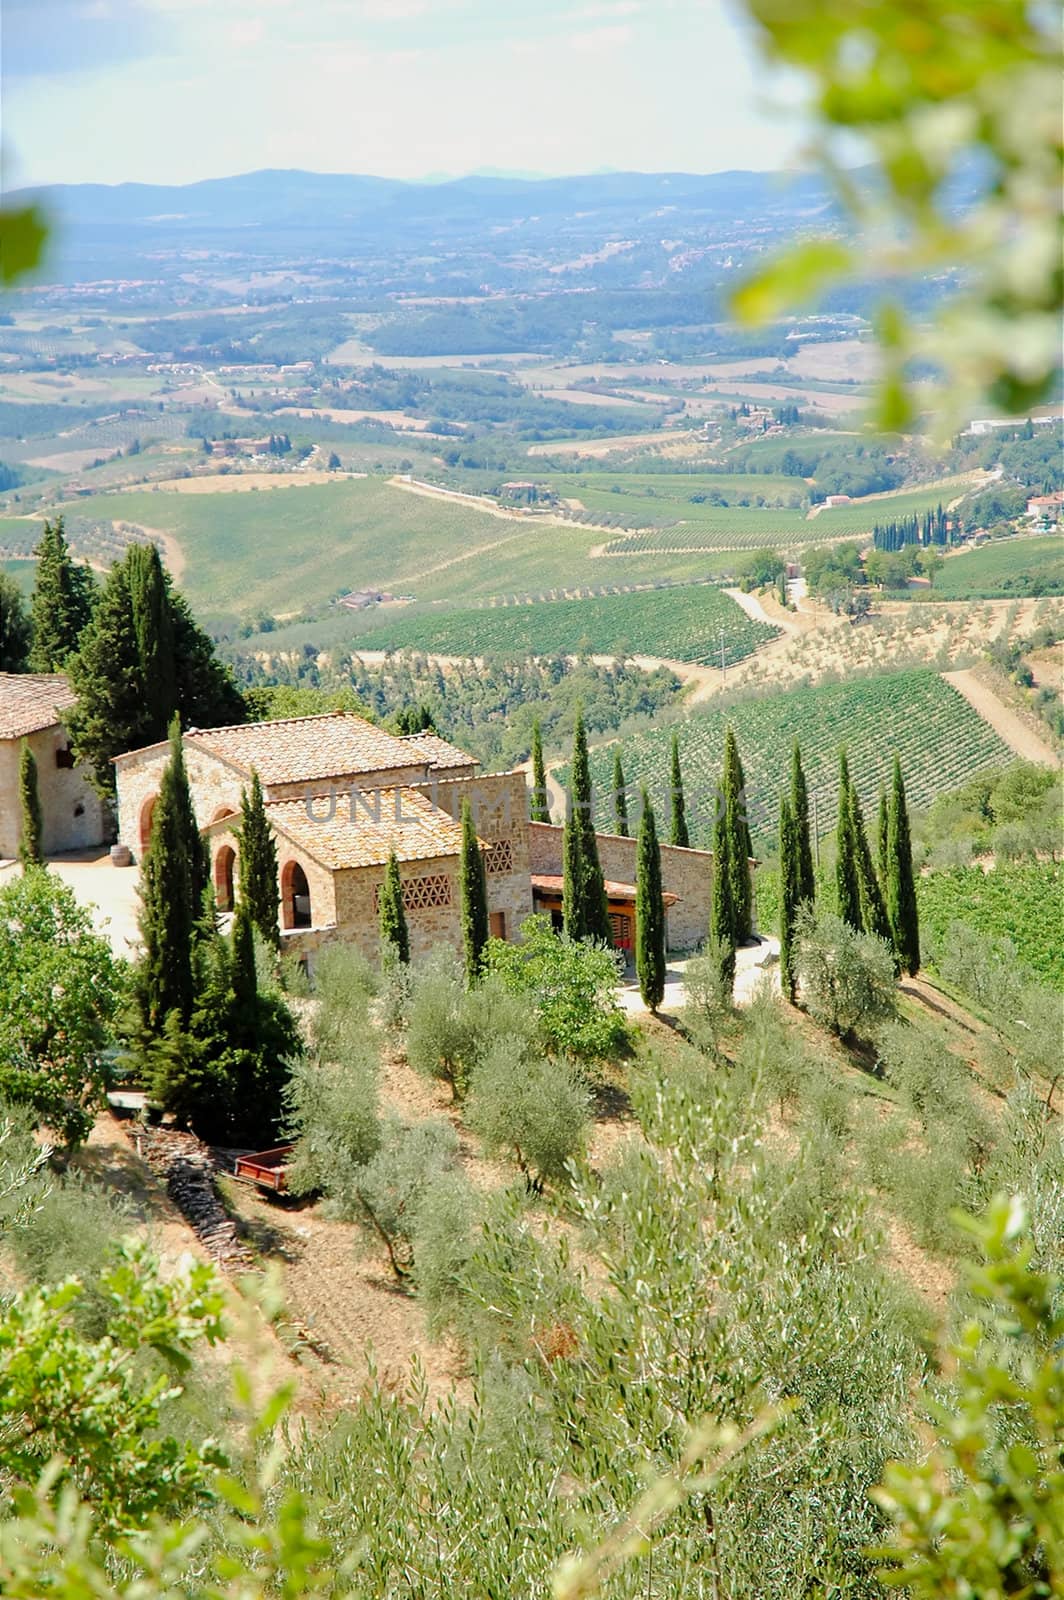 Winery at Chianti region